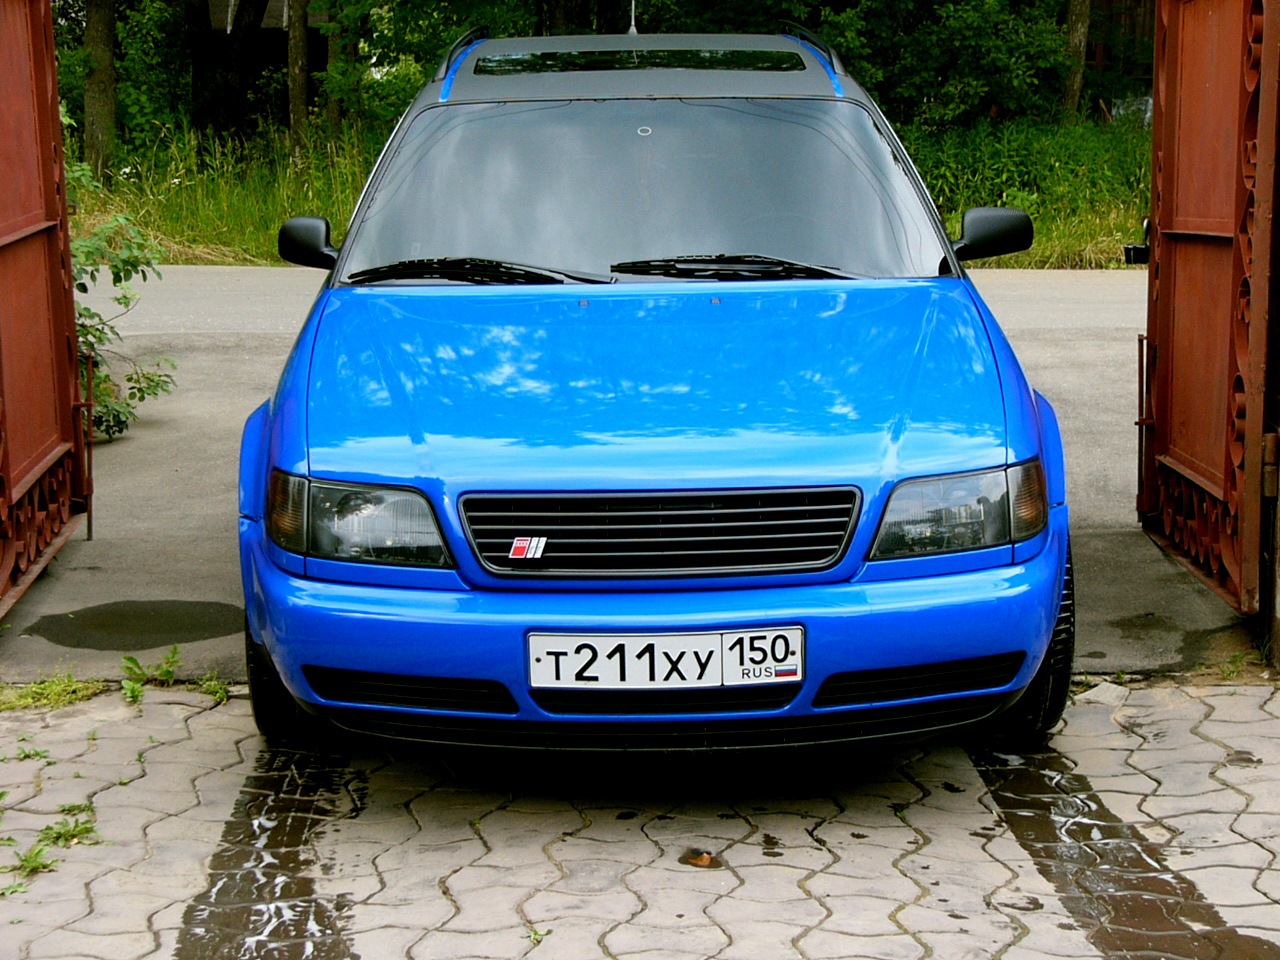 6 c 04. Audi a6 c4 синяя. Ауди s6 c4 2.2 Turbo. Ауди 100 с4 синий металлик. Ауди 100 с4 синяя.